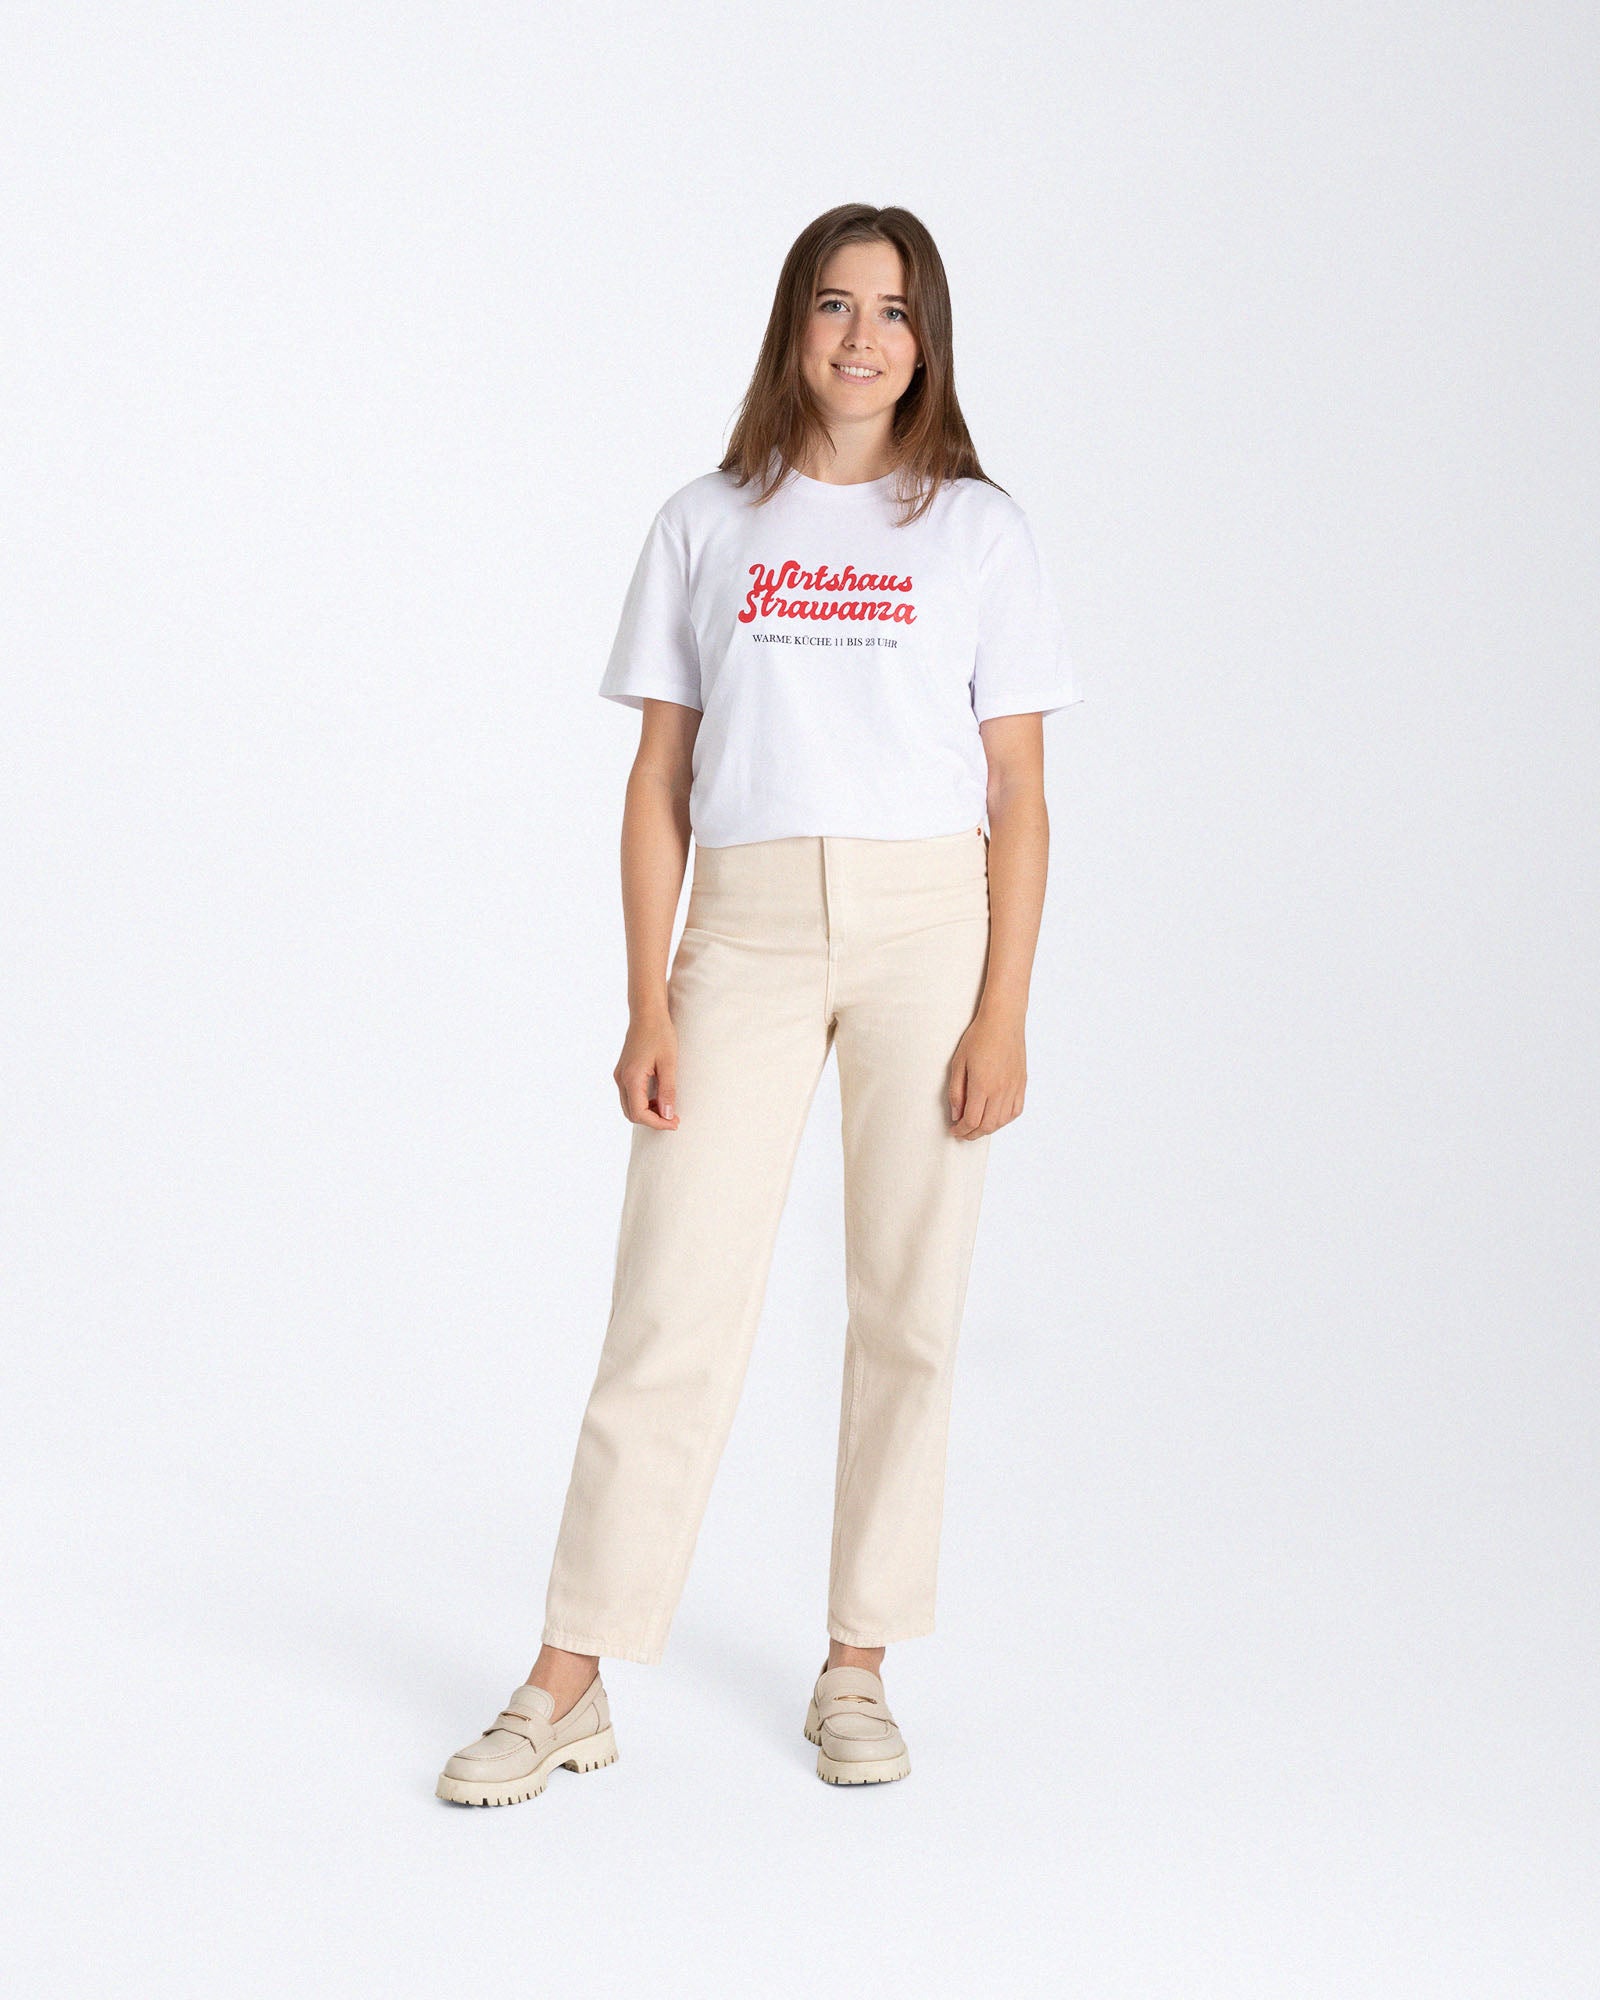 Ein weibliches Model trägt ein weißes T-Shirt mit einem zweiteiligen Print auf der Vorderseite, denn einmal ein orangener 